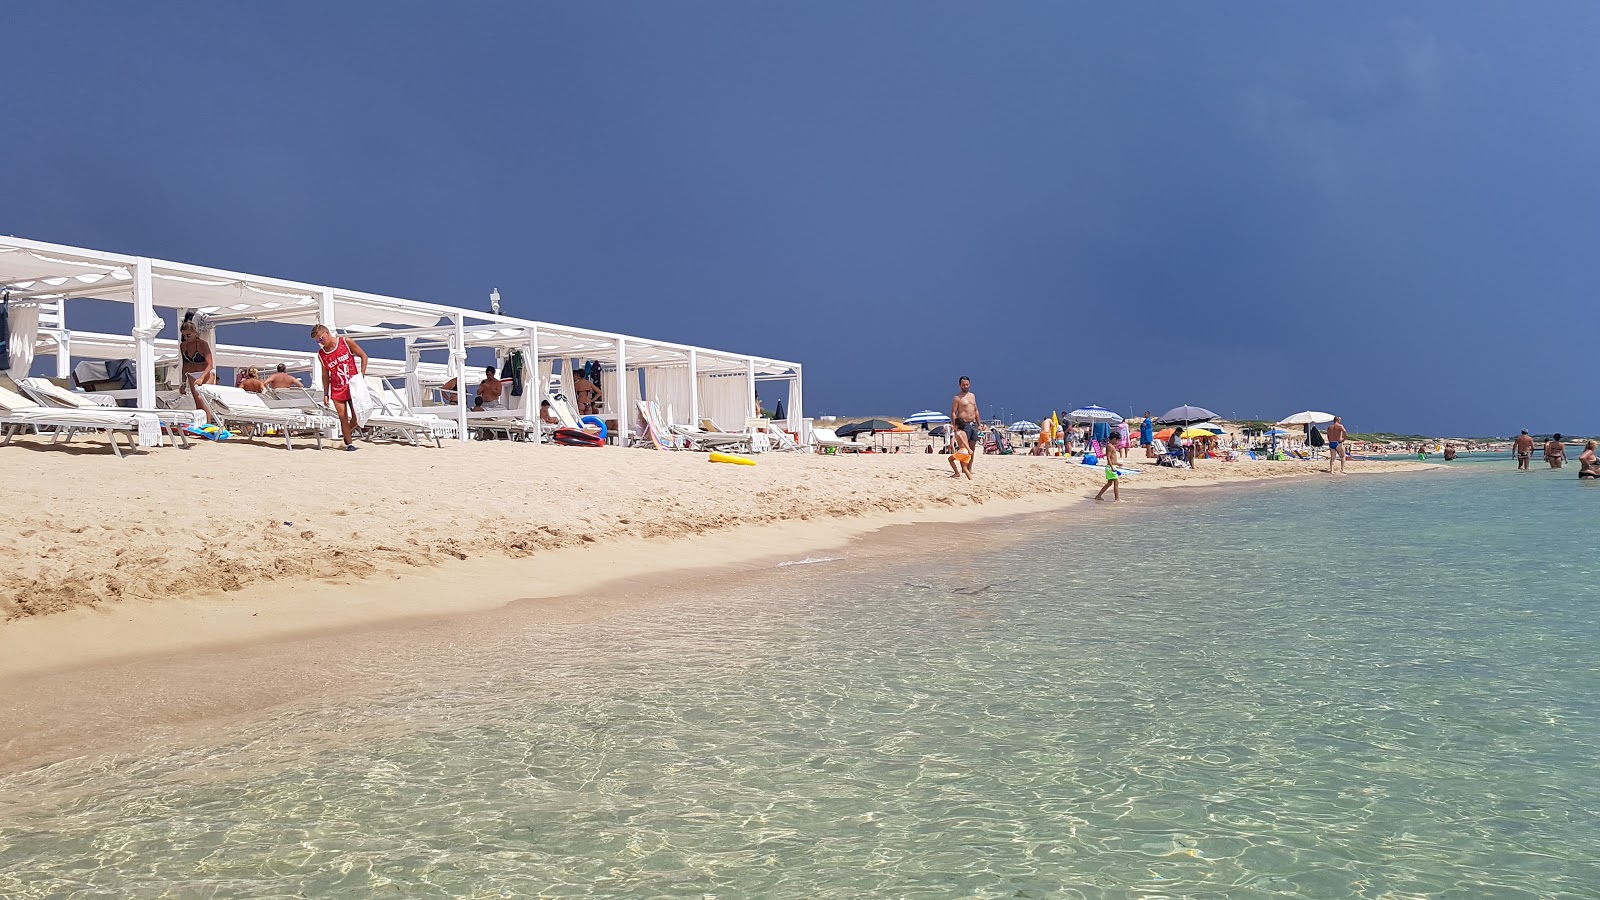 Foto de Spiaggia Di Campomarino - lugar popular entre los conocedores del relax